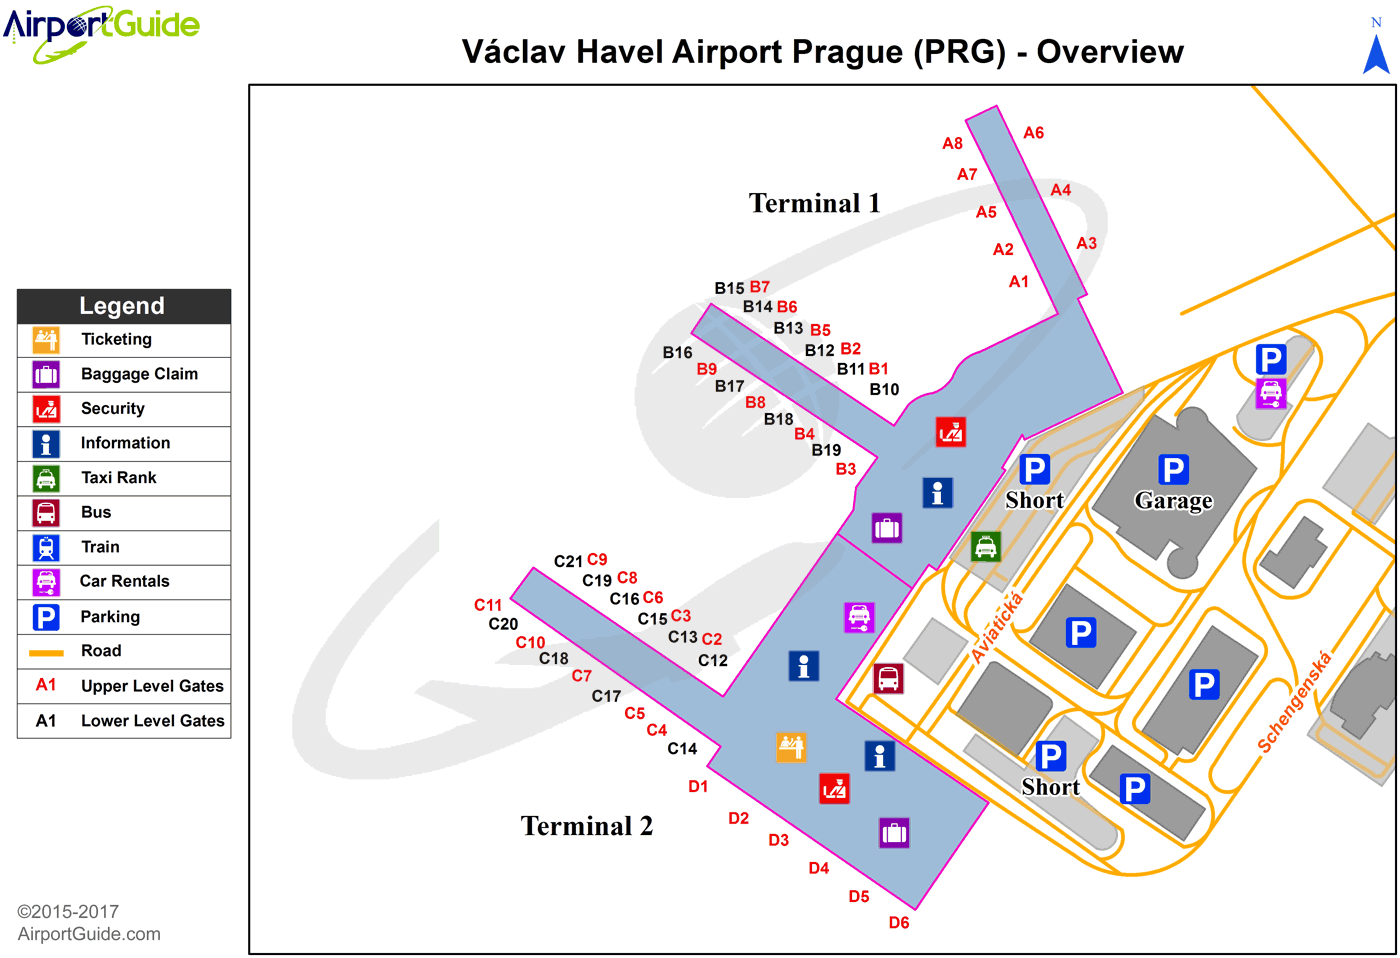 Аэропорты чехии: прага, подрубице, брно и карловы вары